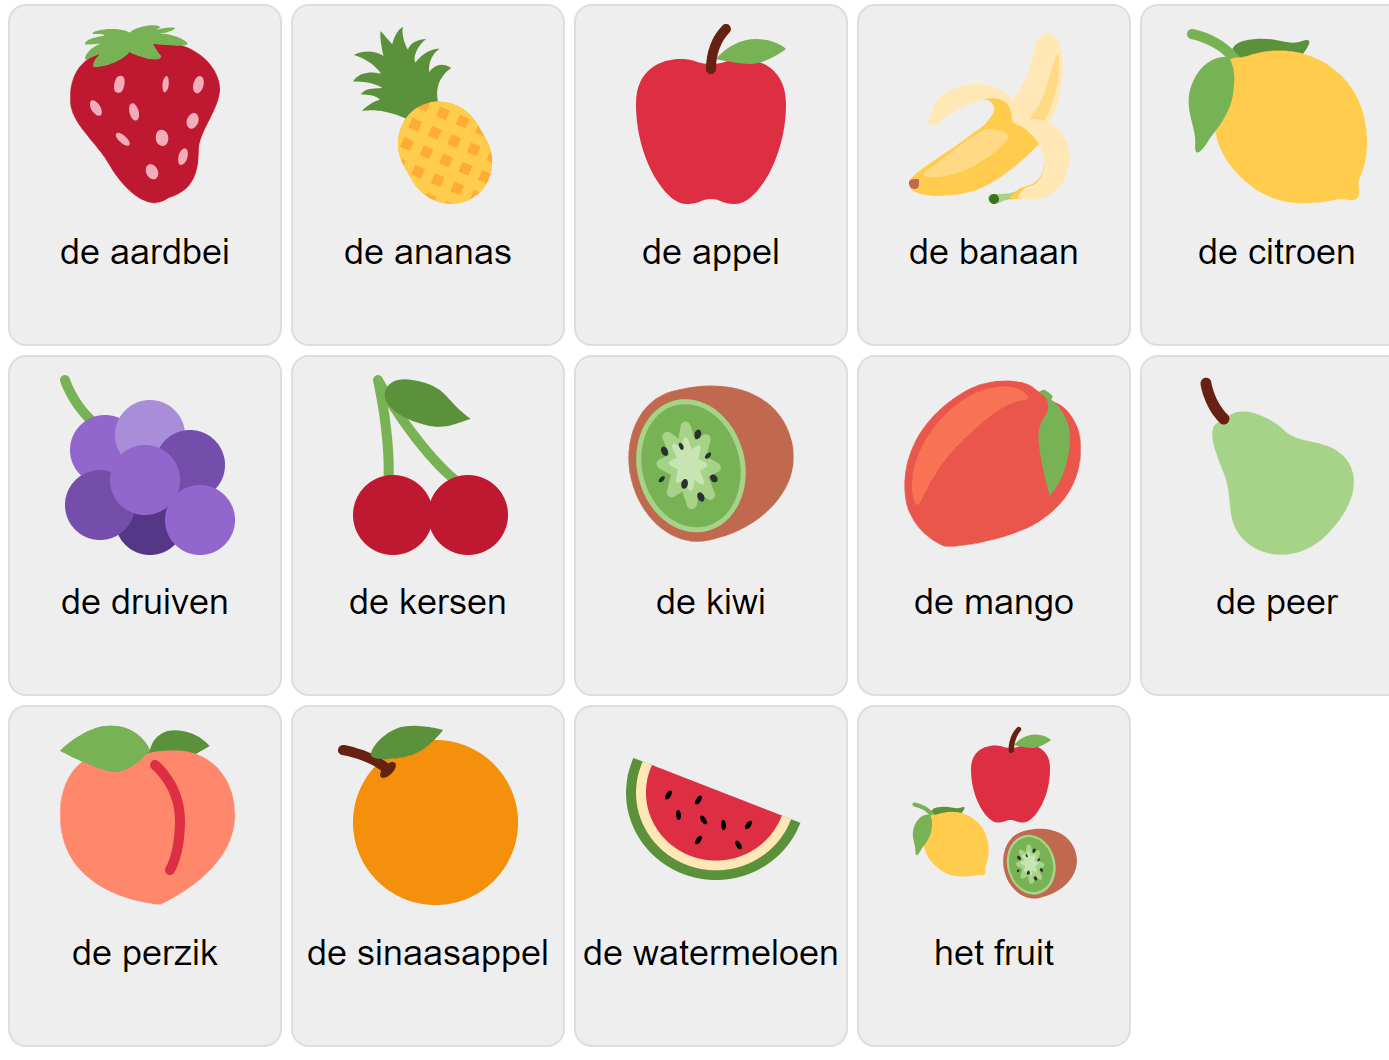 Fruits in Dutch